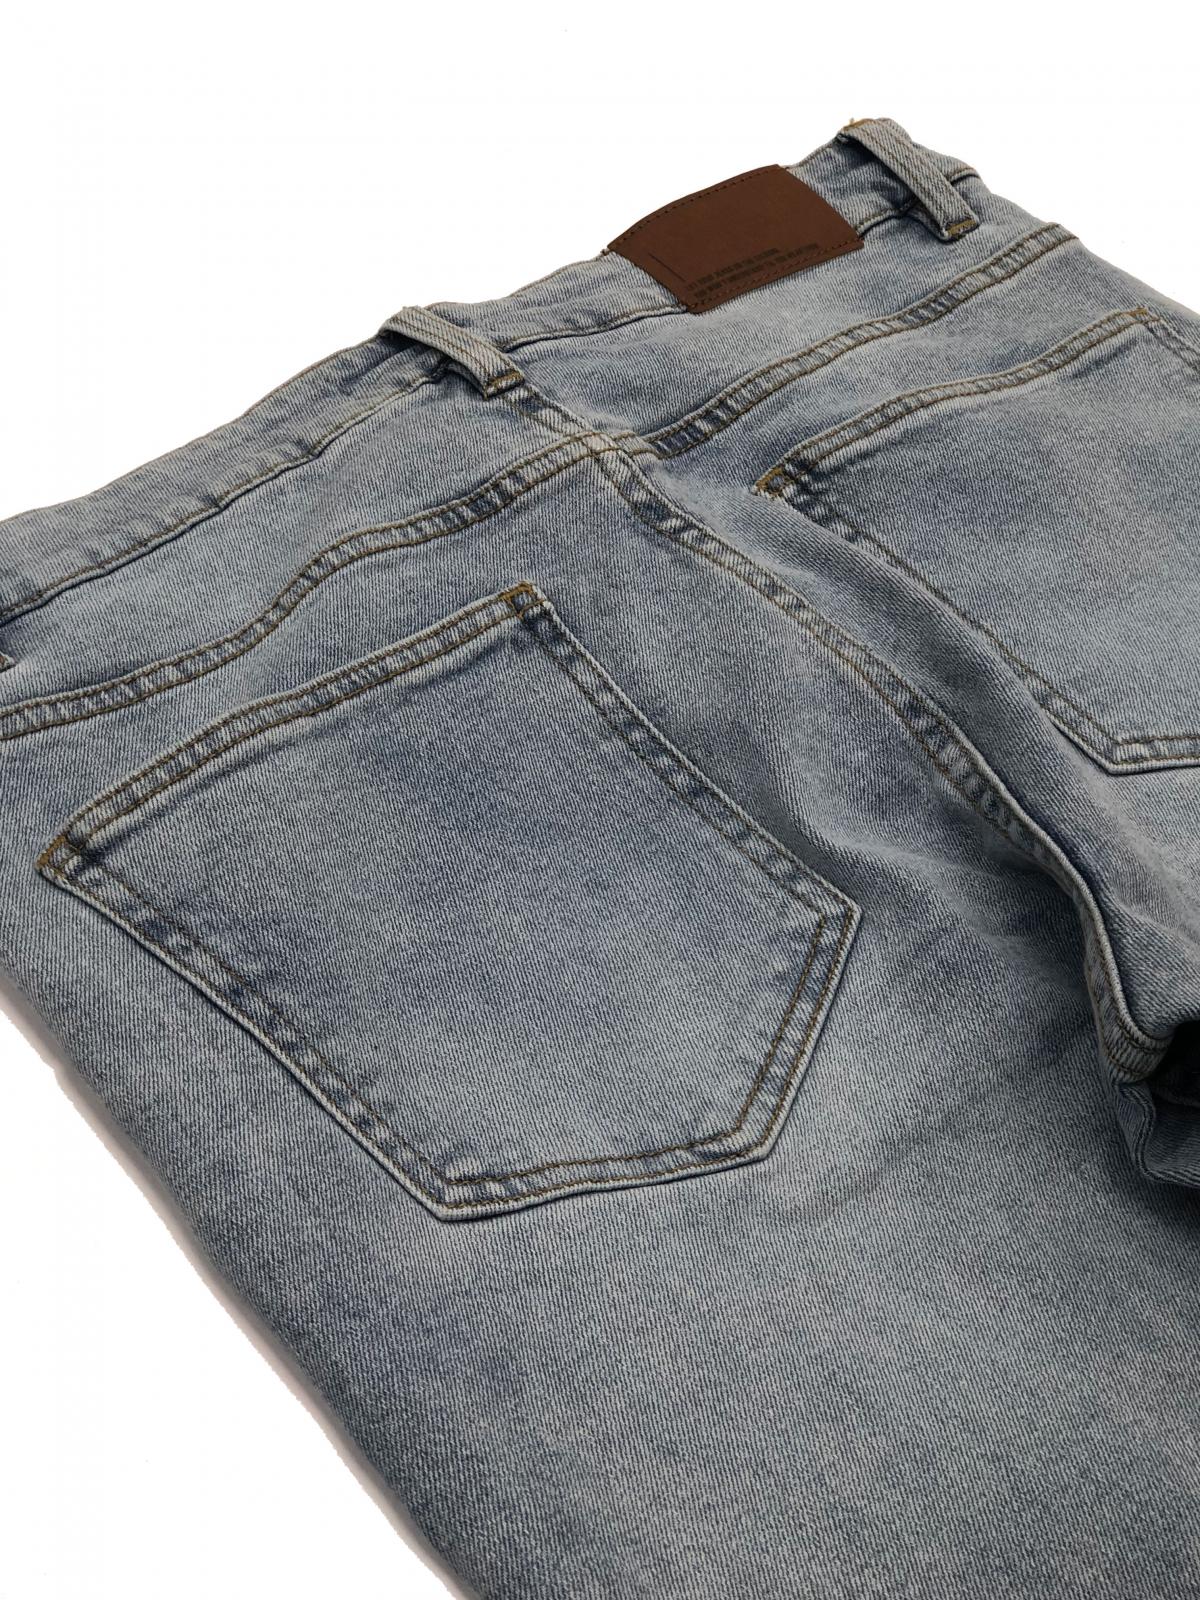 Men's Slimfit Jeans P0015 #5